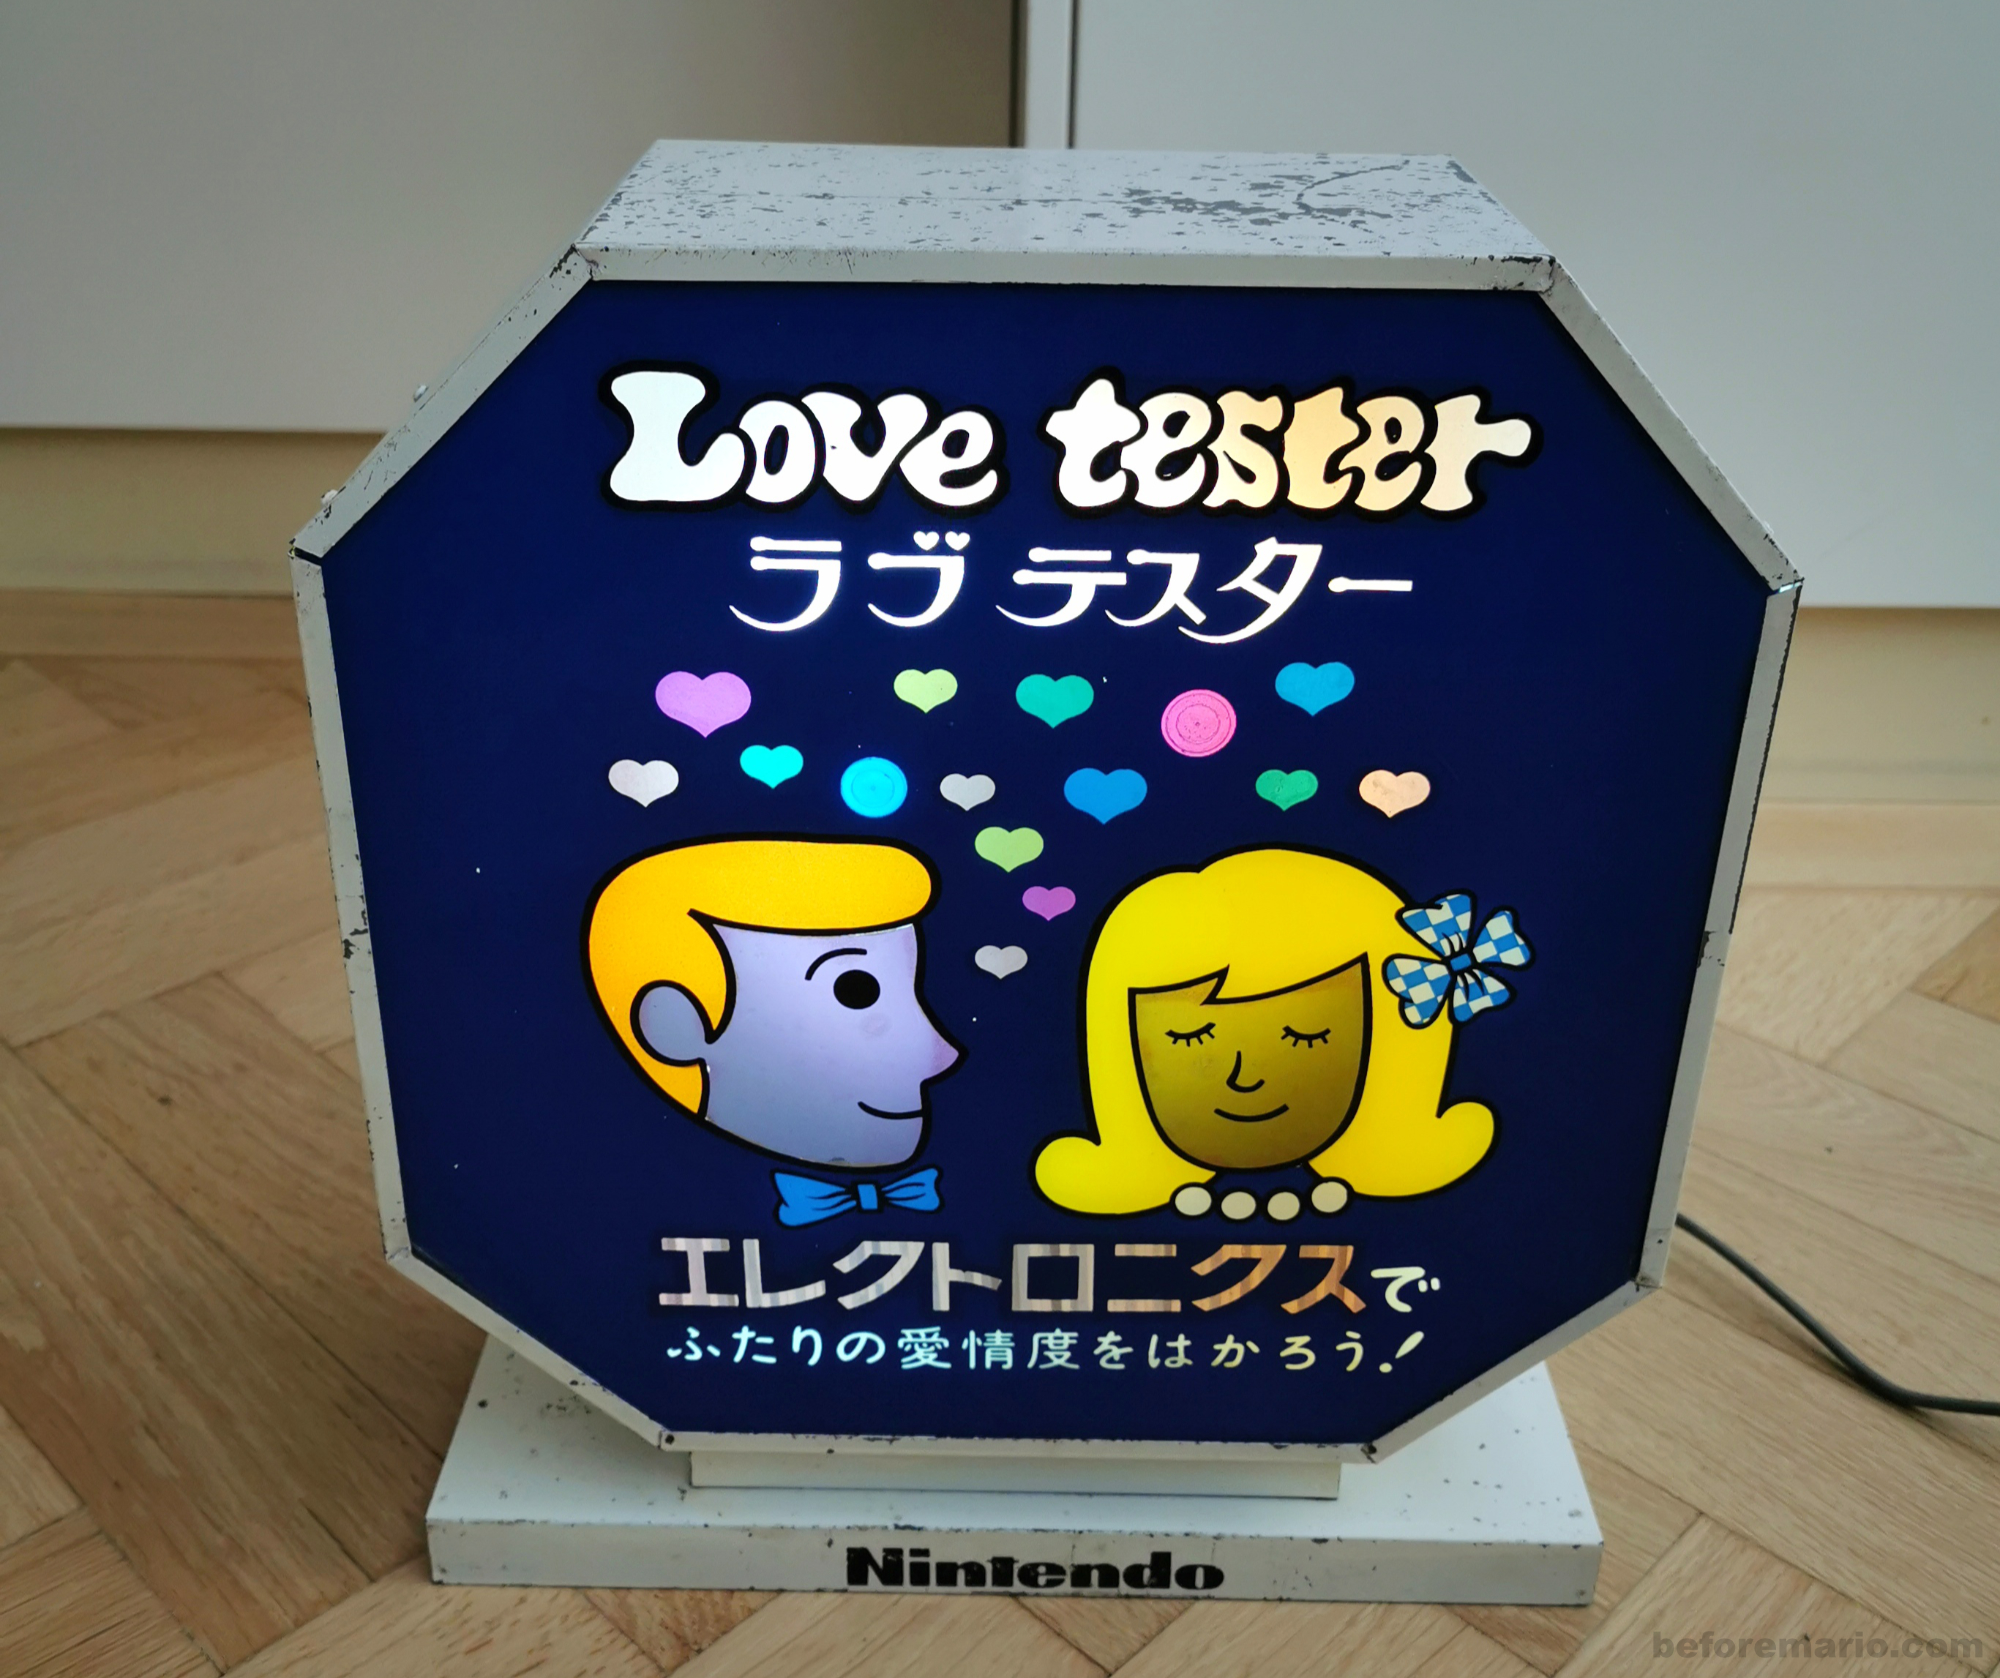 Photos of Nintendo's Love Tester